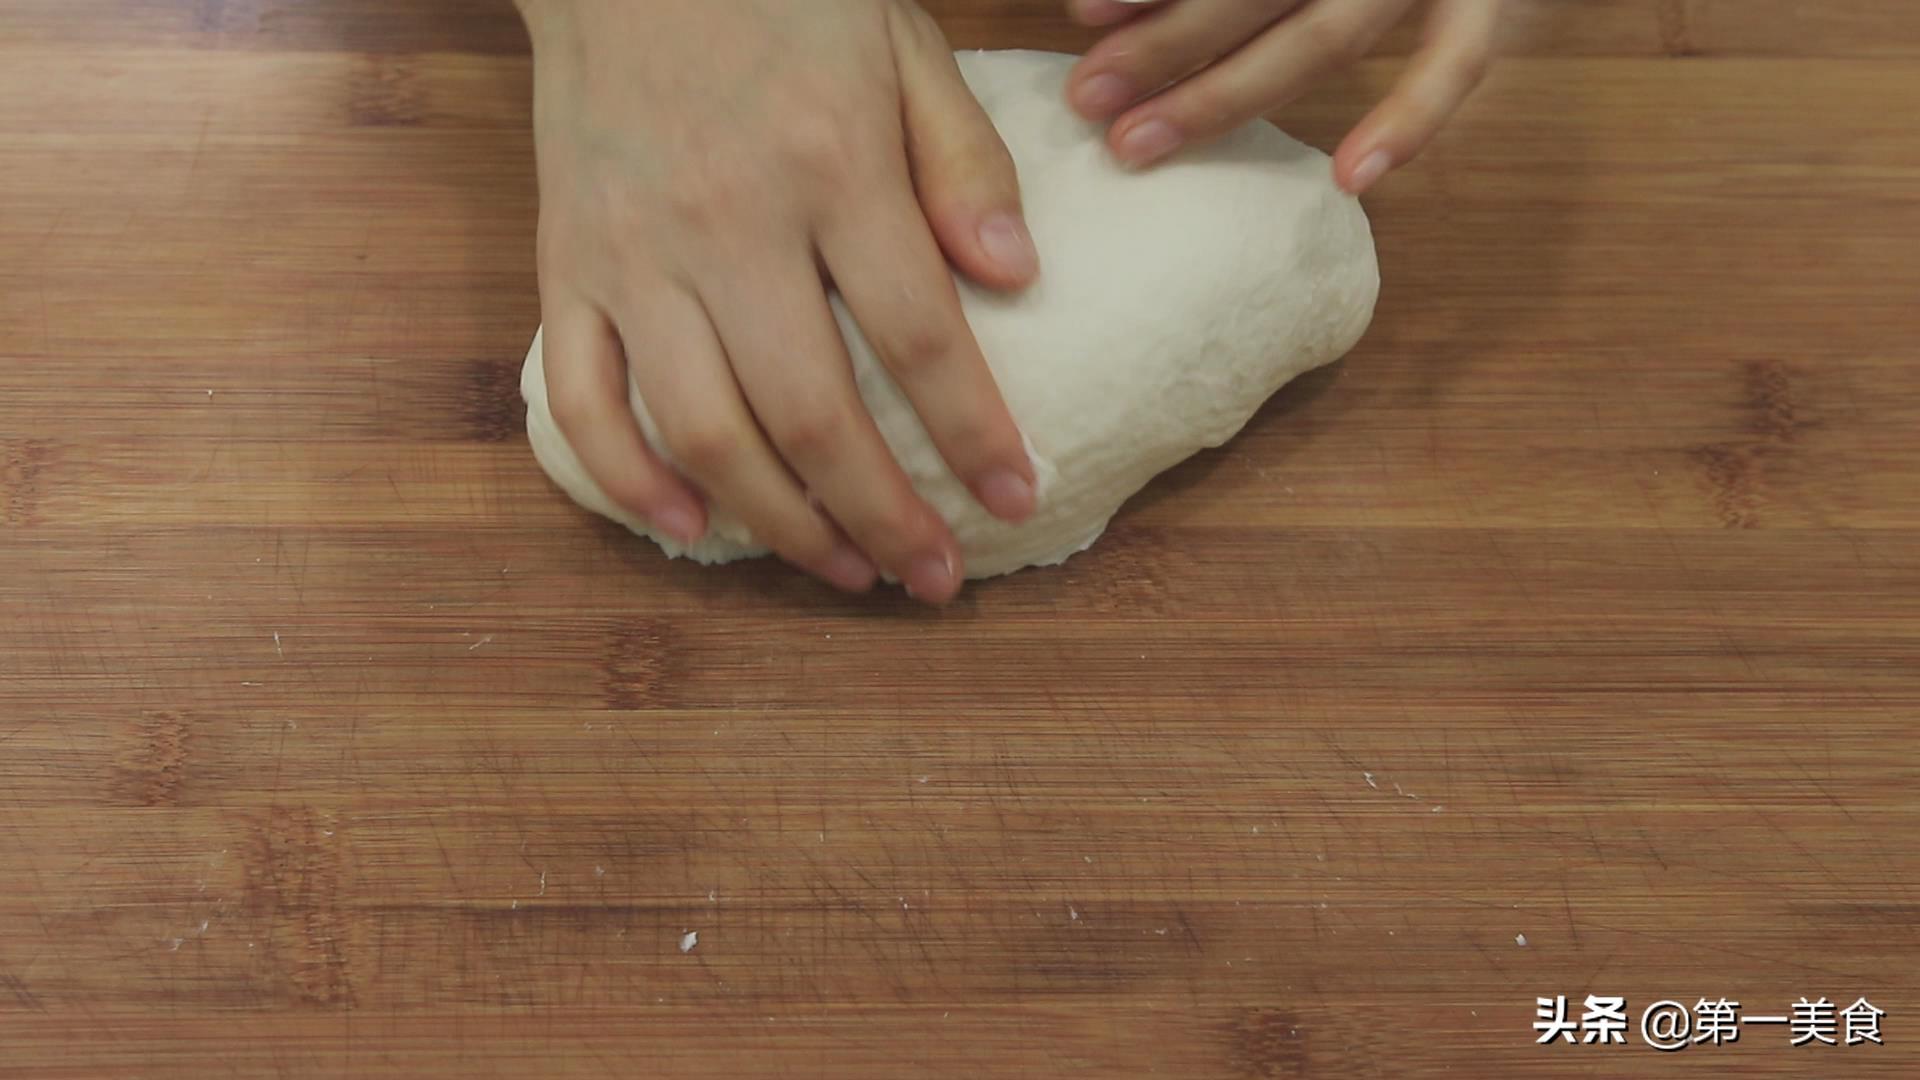 烤箱做面包的家庭做法简单易学（用烤箱做面包教程）-1